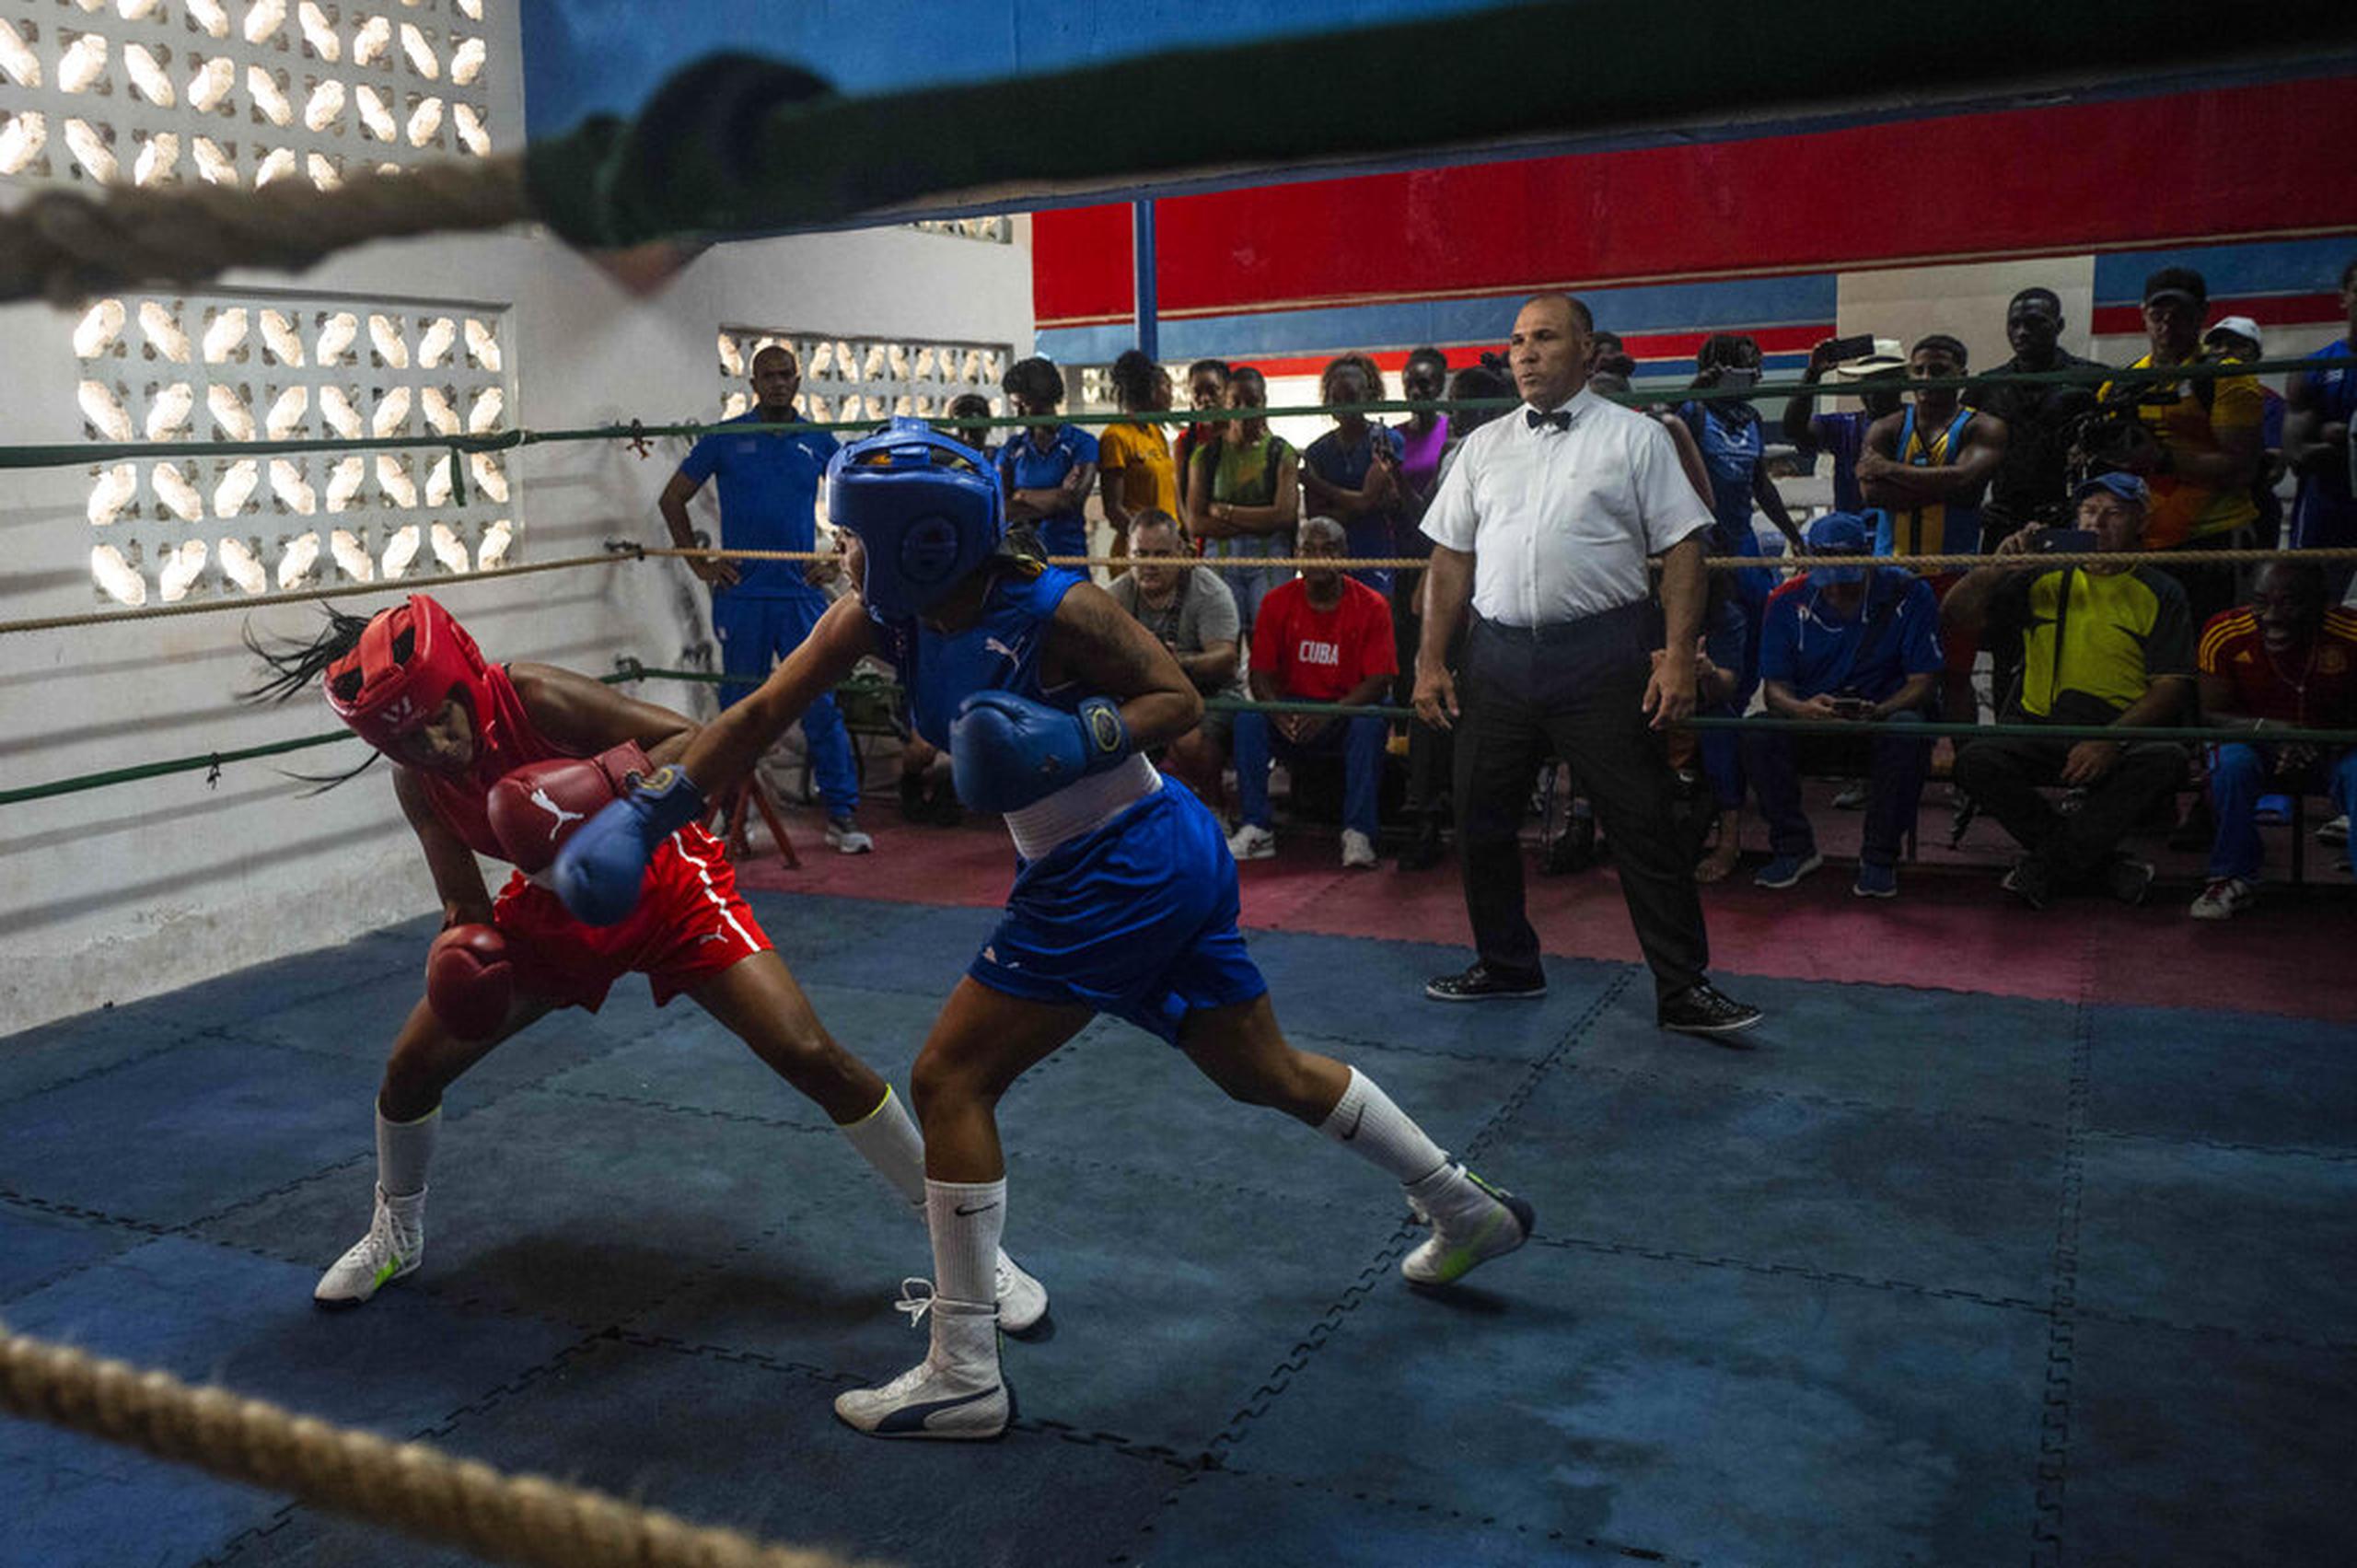 Ydamelys Moreno, izquierda, esquiva un golpe de su oponente en el primer programa oficial de boxeo femenino cubano, en la escuela de boxeo Giraldo Córdova en La Habana, Cuba.